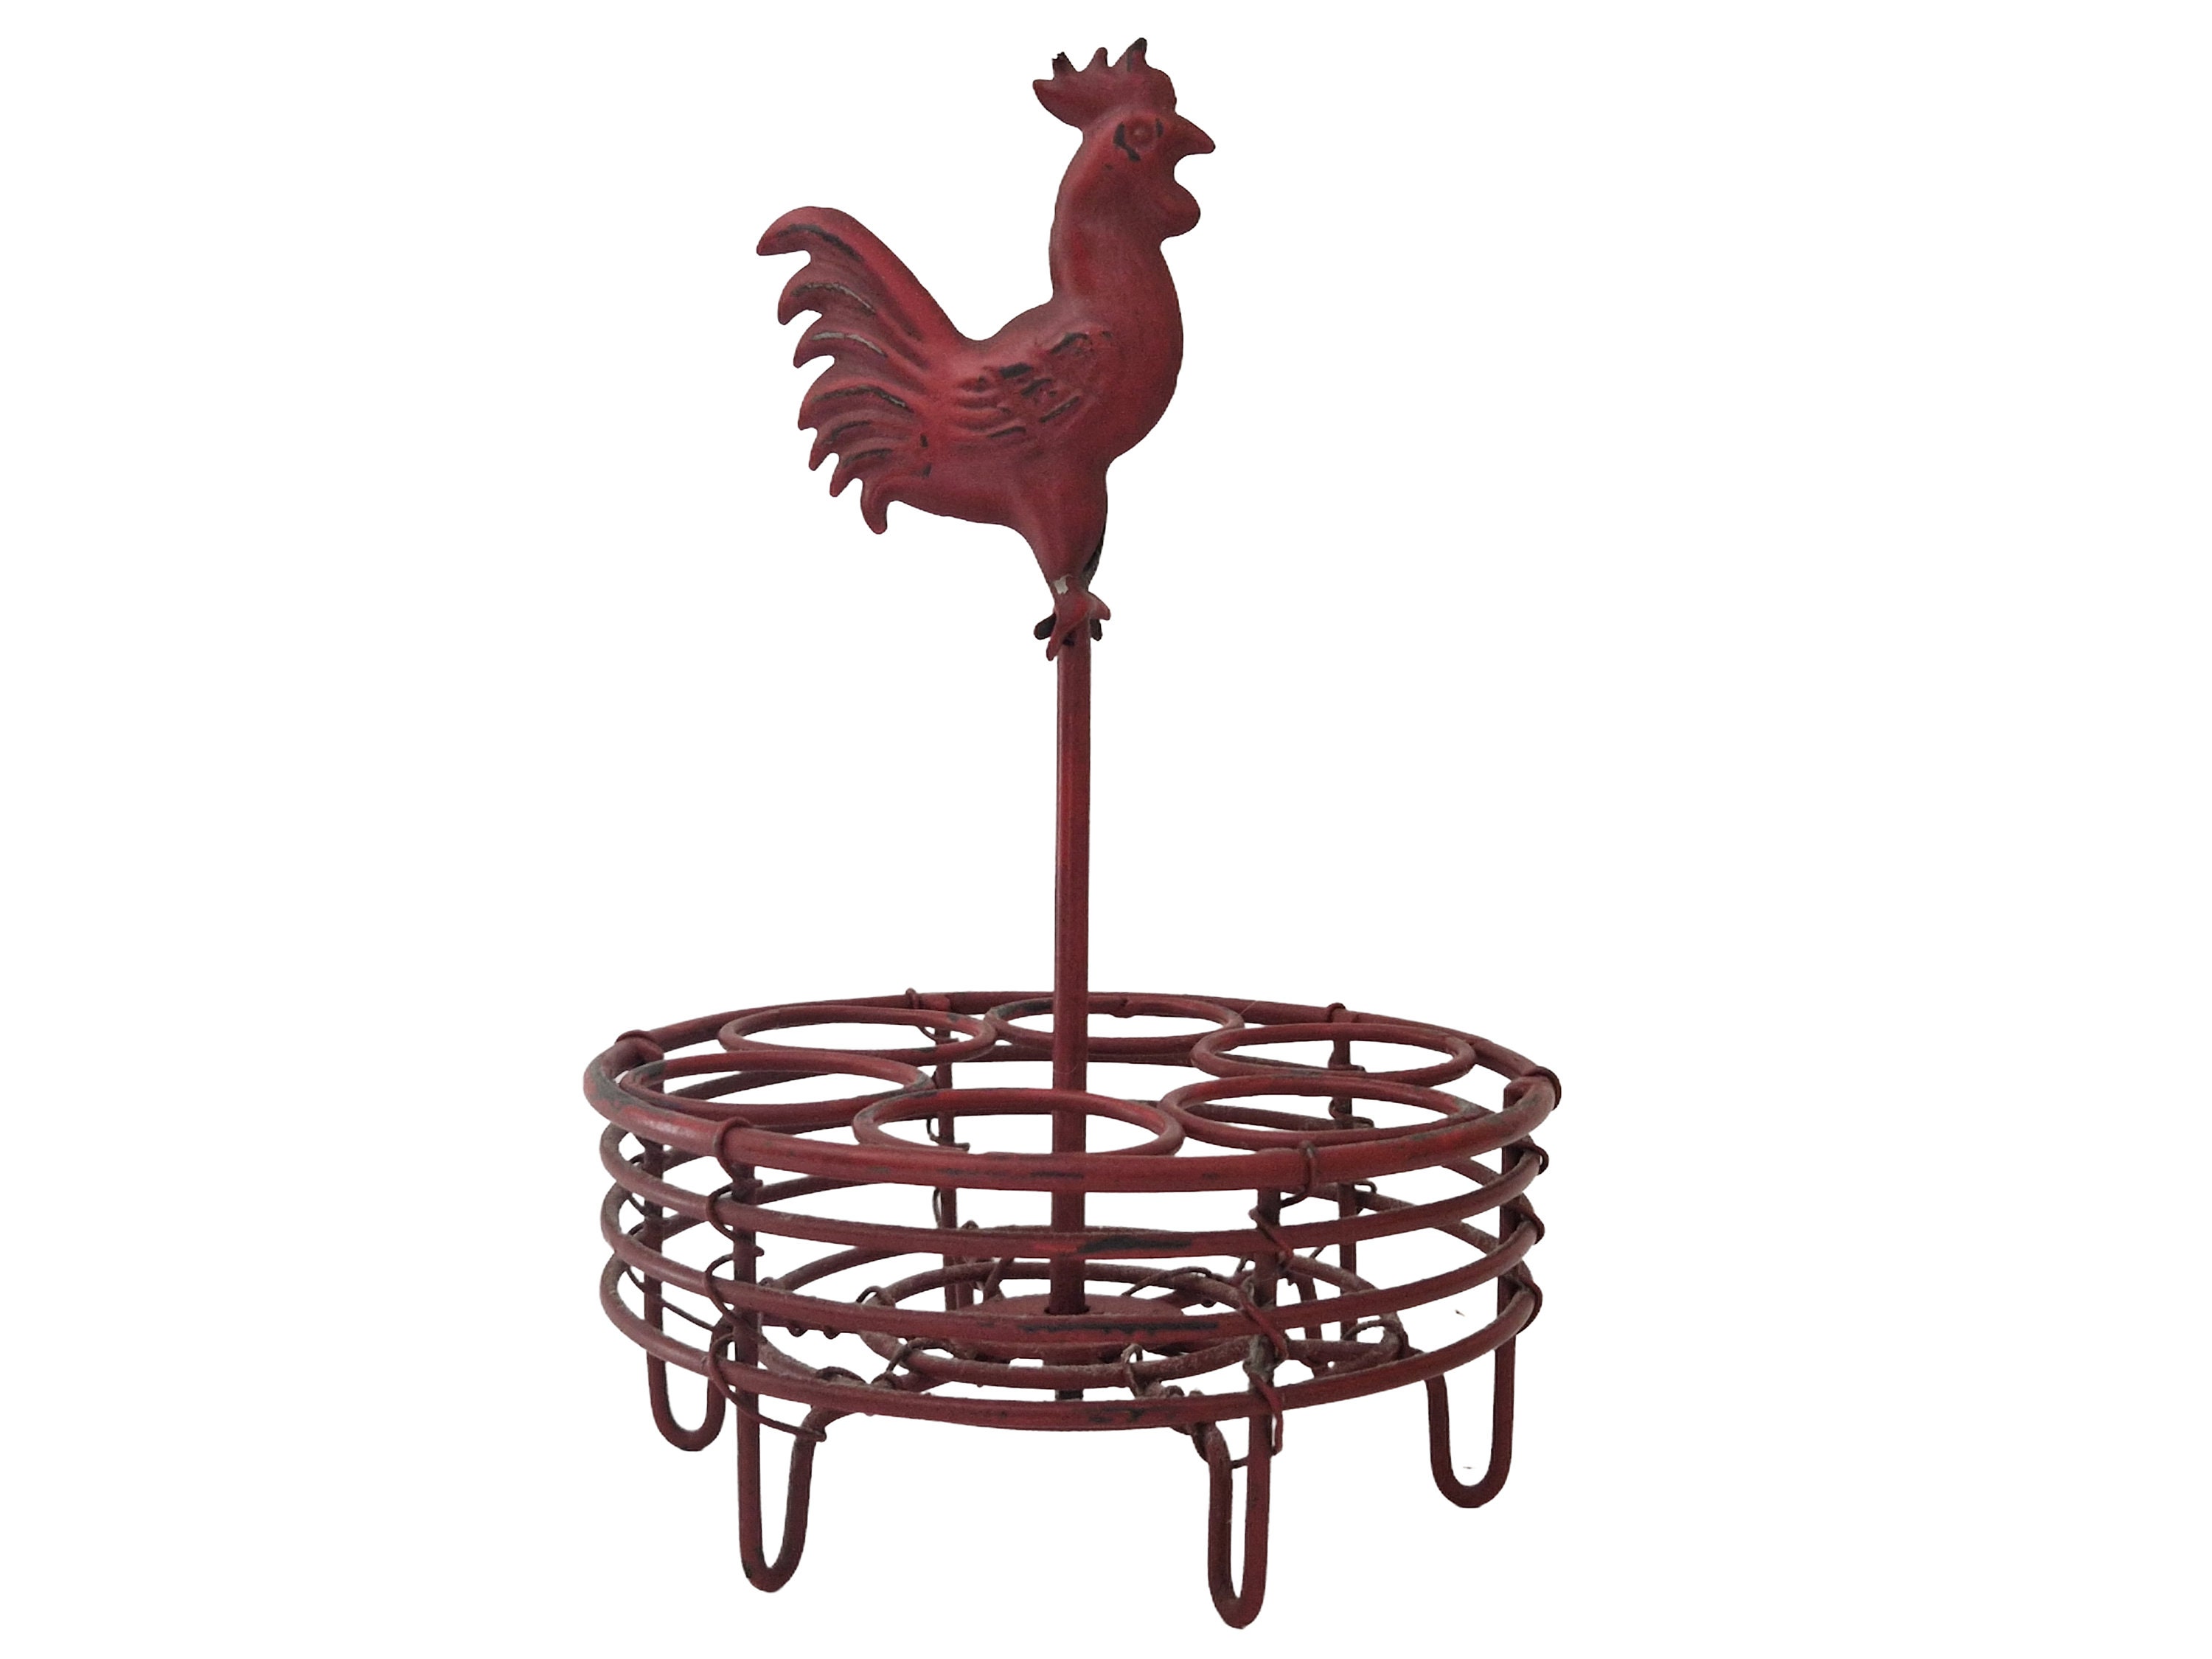 Vintage Egg Basket Hen Chicken Metal Wire Farmhouse Kitchen Decor